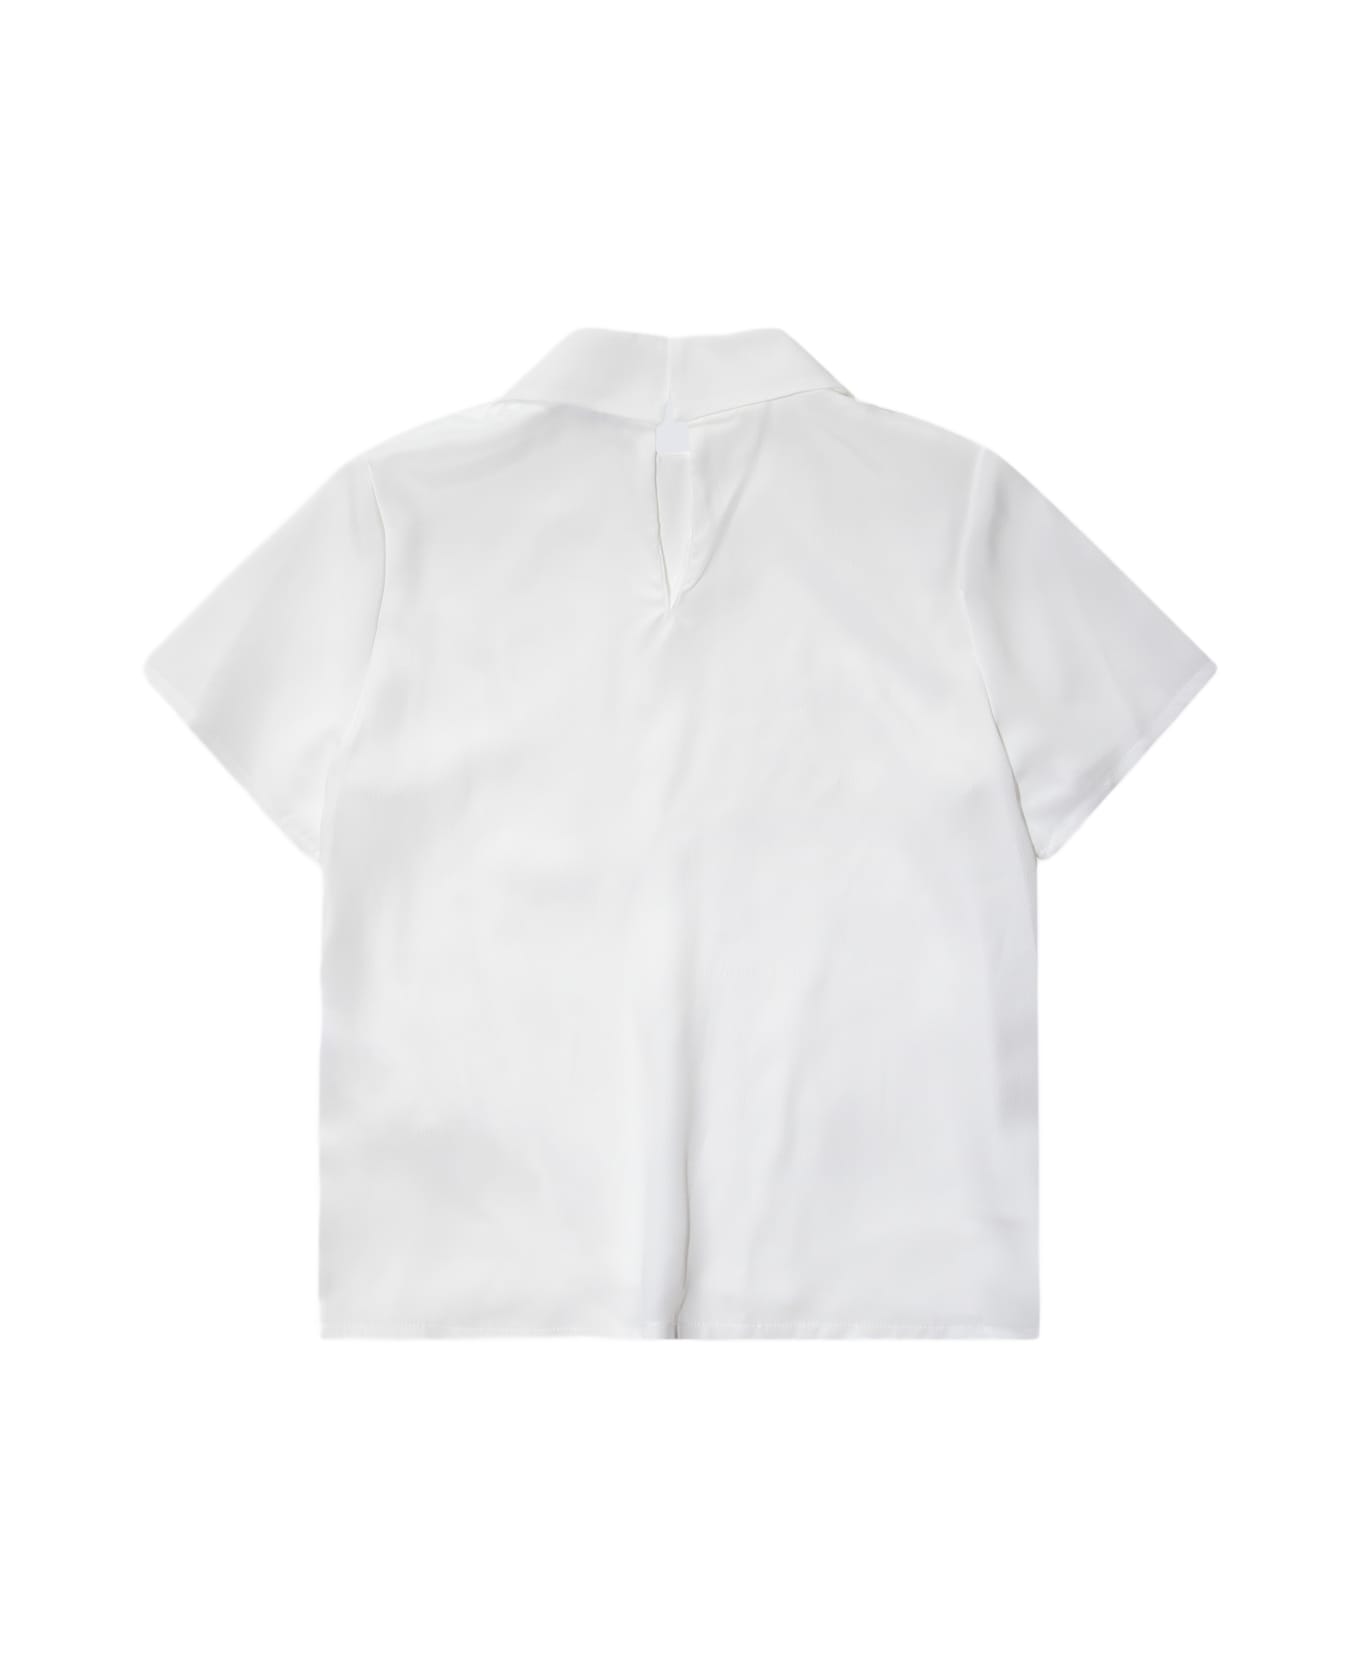 Simonetta White Shirt - White